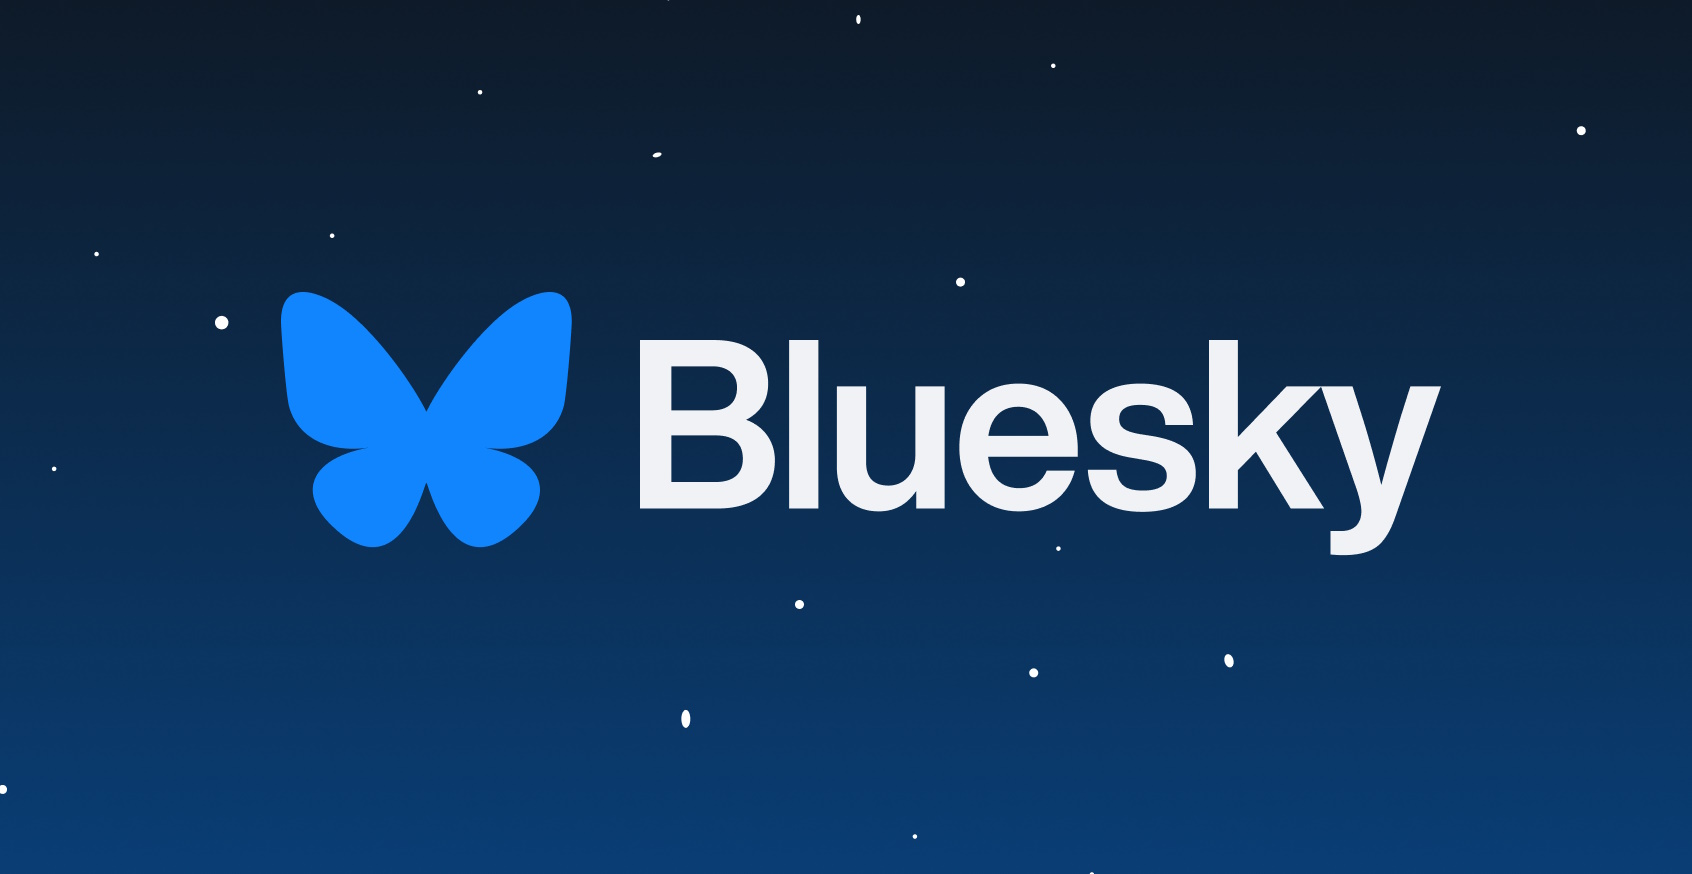 Logo de Bluesky